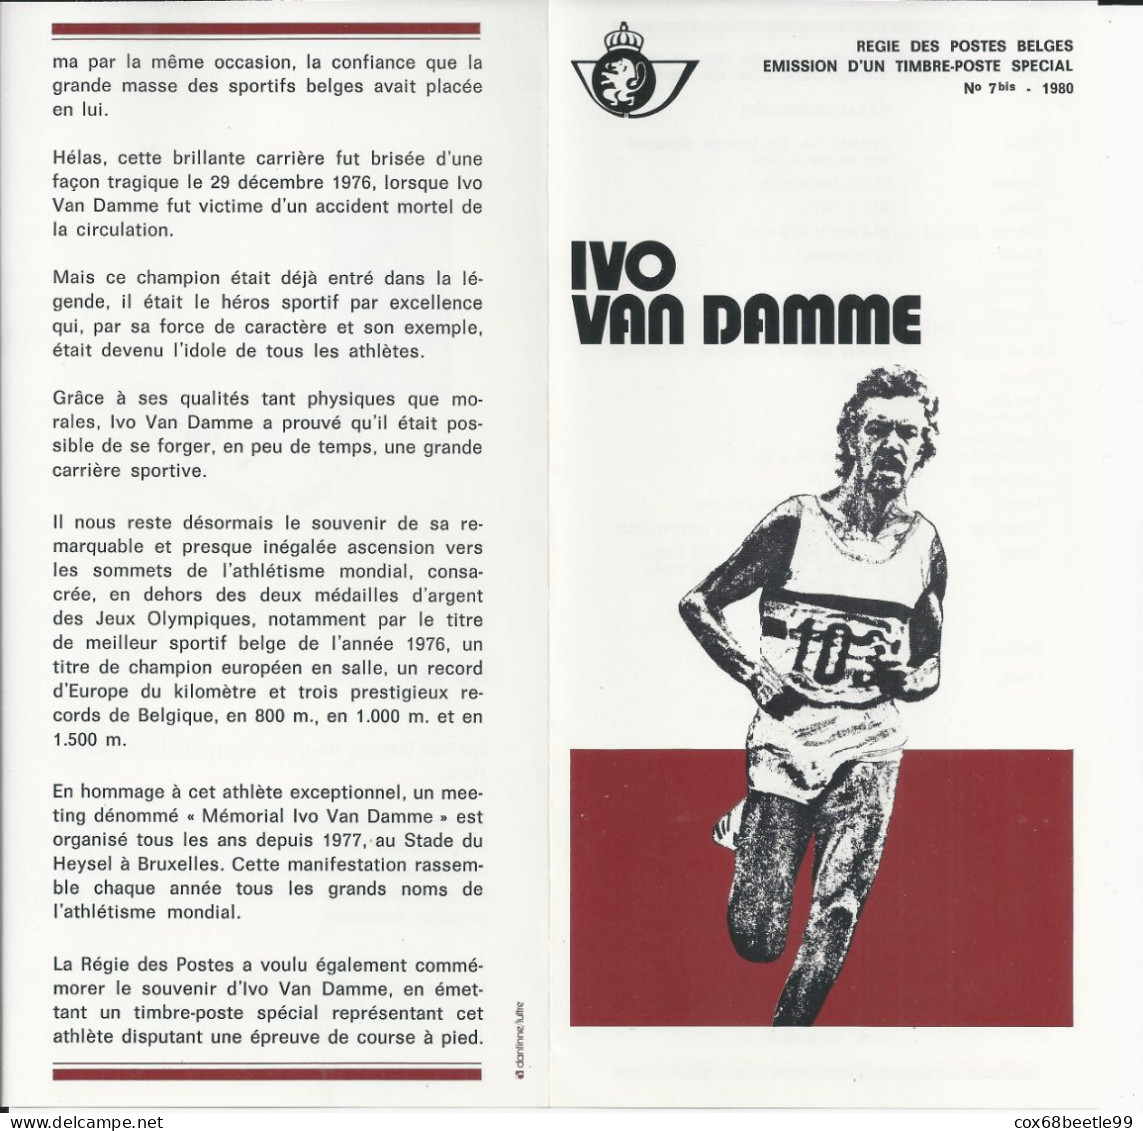 IVO VAN DAMME Belgique Feuillet De La Poste 1980 - 7 Bis FDC Cob 1974 03-05-1980 LIEGE Club Philatélique Le Perron - Post Office Leaflets